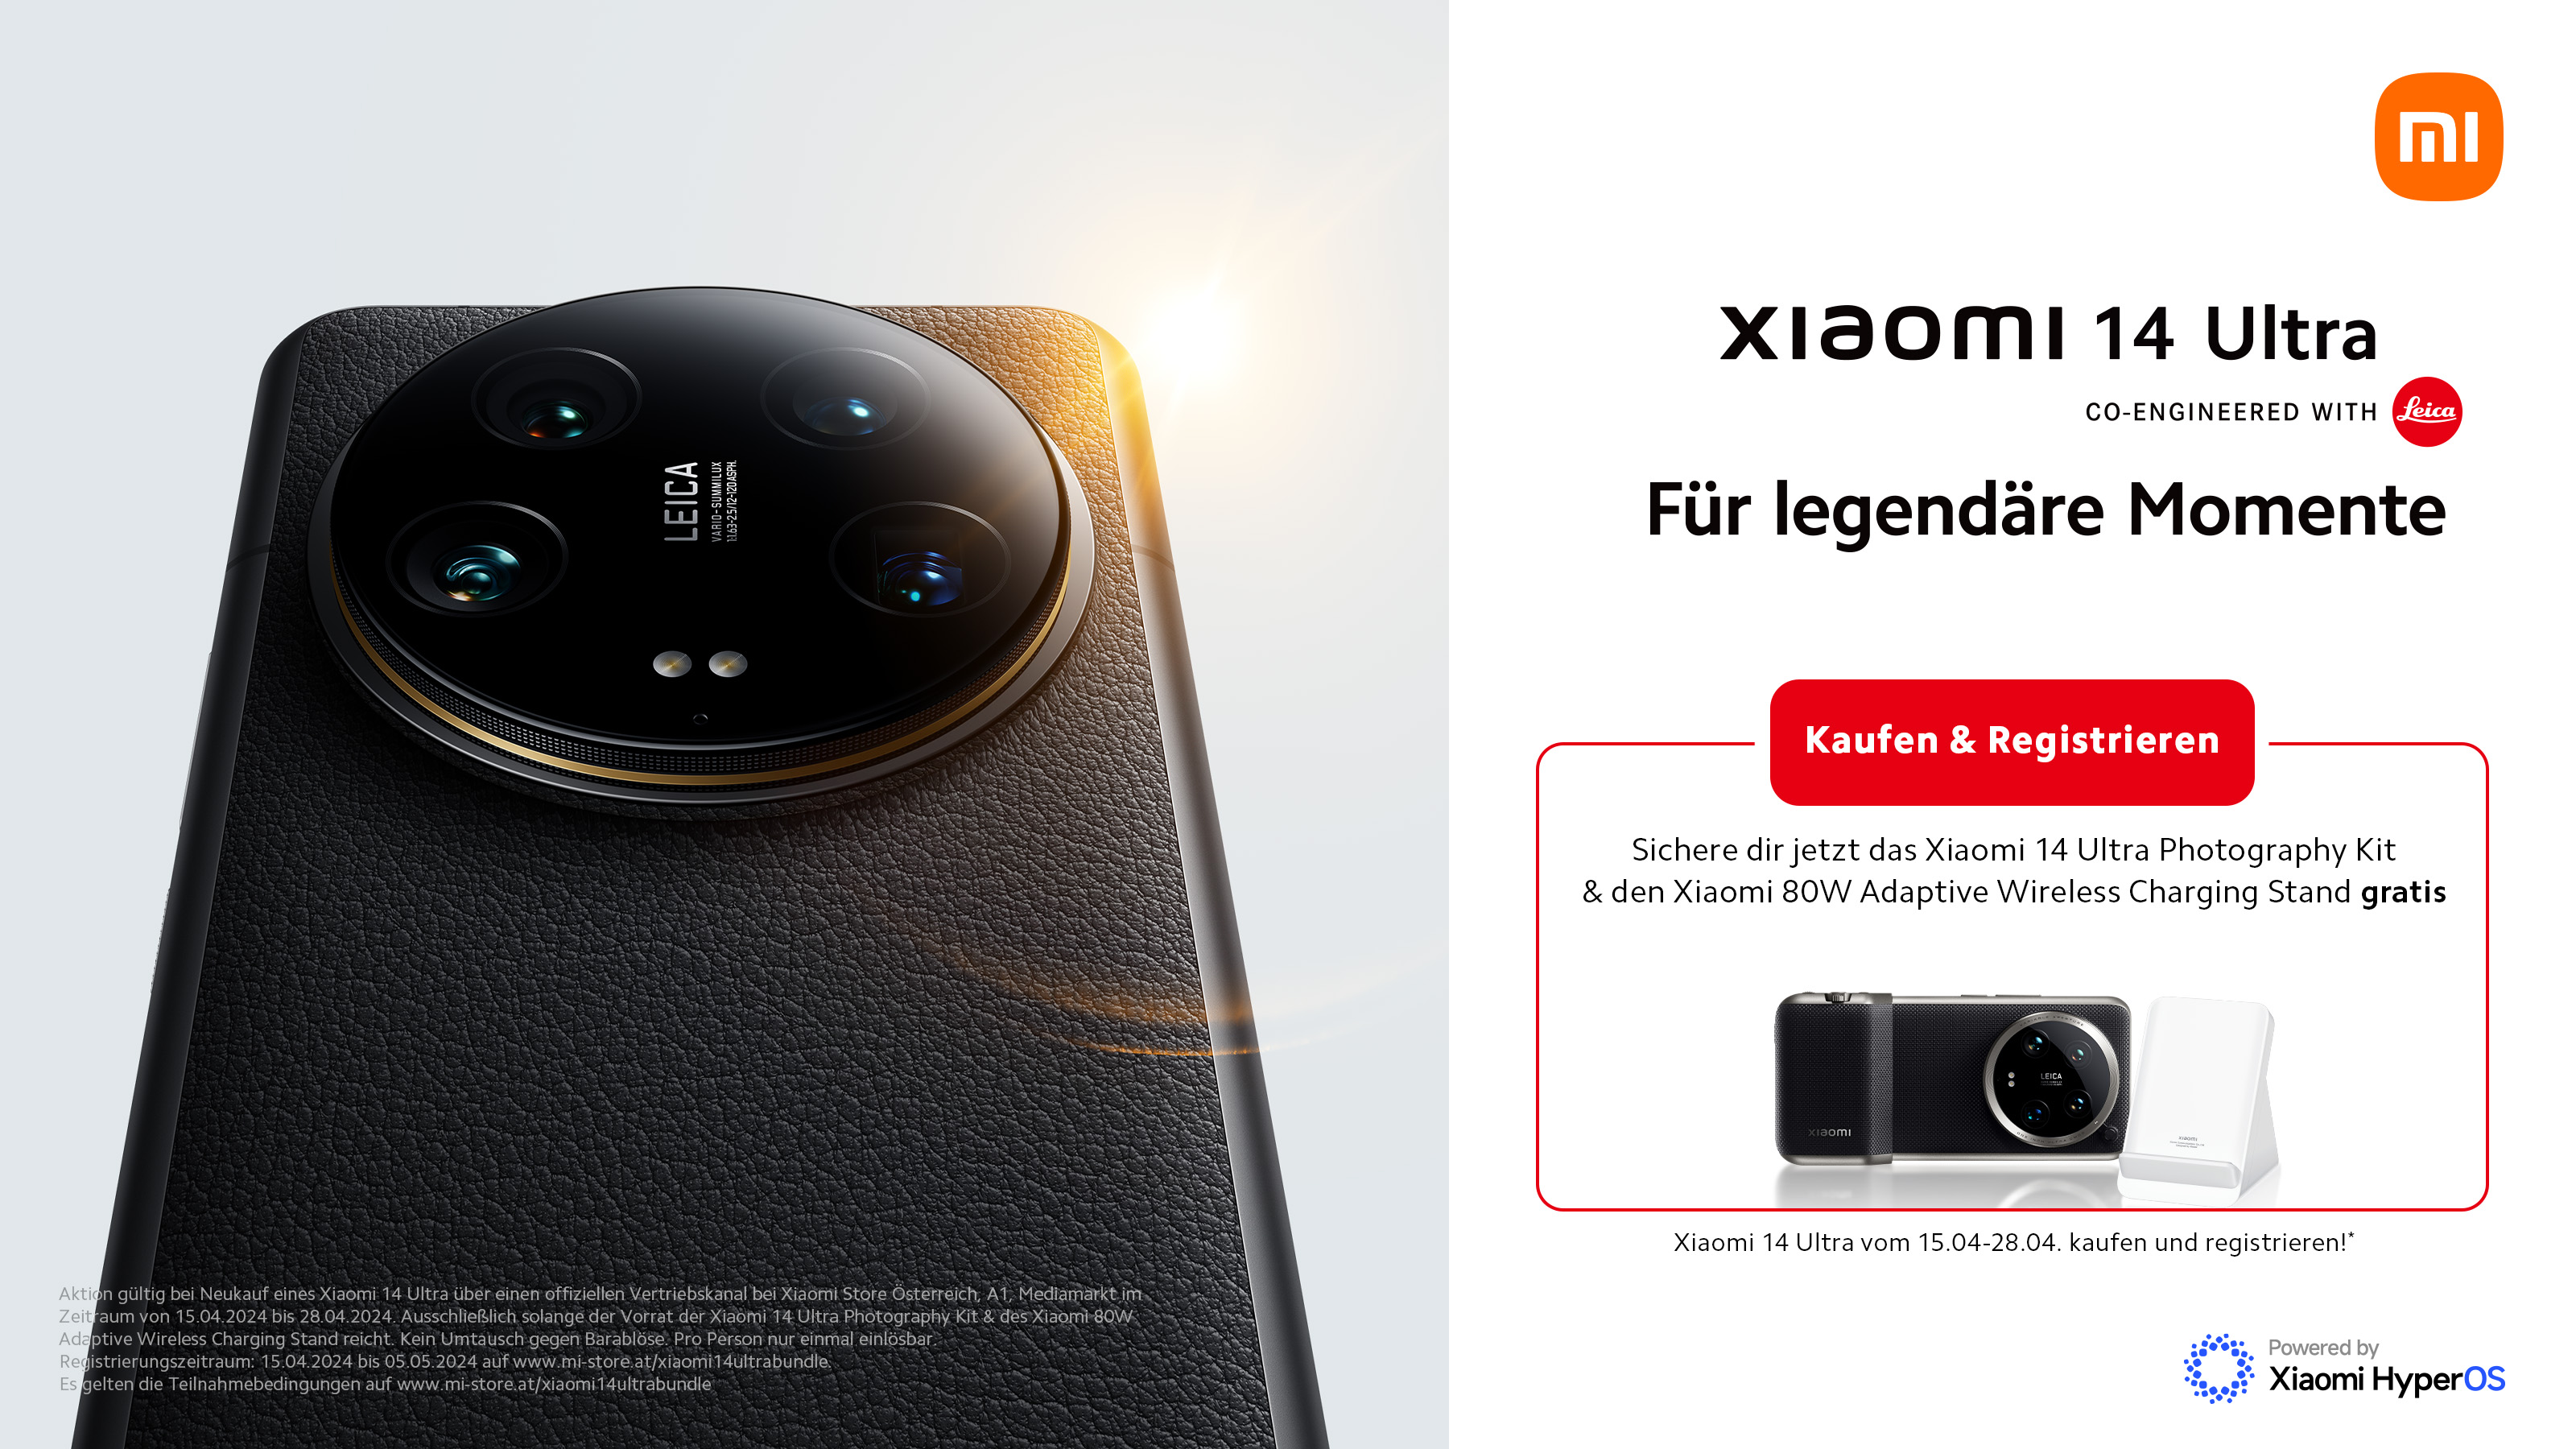 Verkaufsstart des Xiaomi 14 Ultra Smartphones in Österreich mit Bundle-Aktion